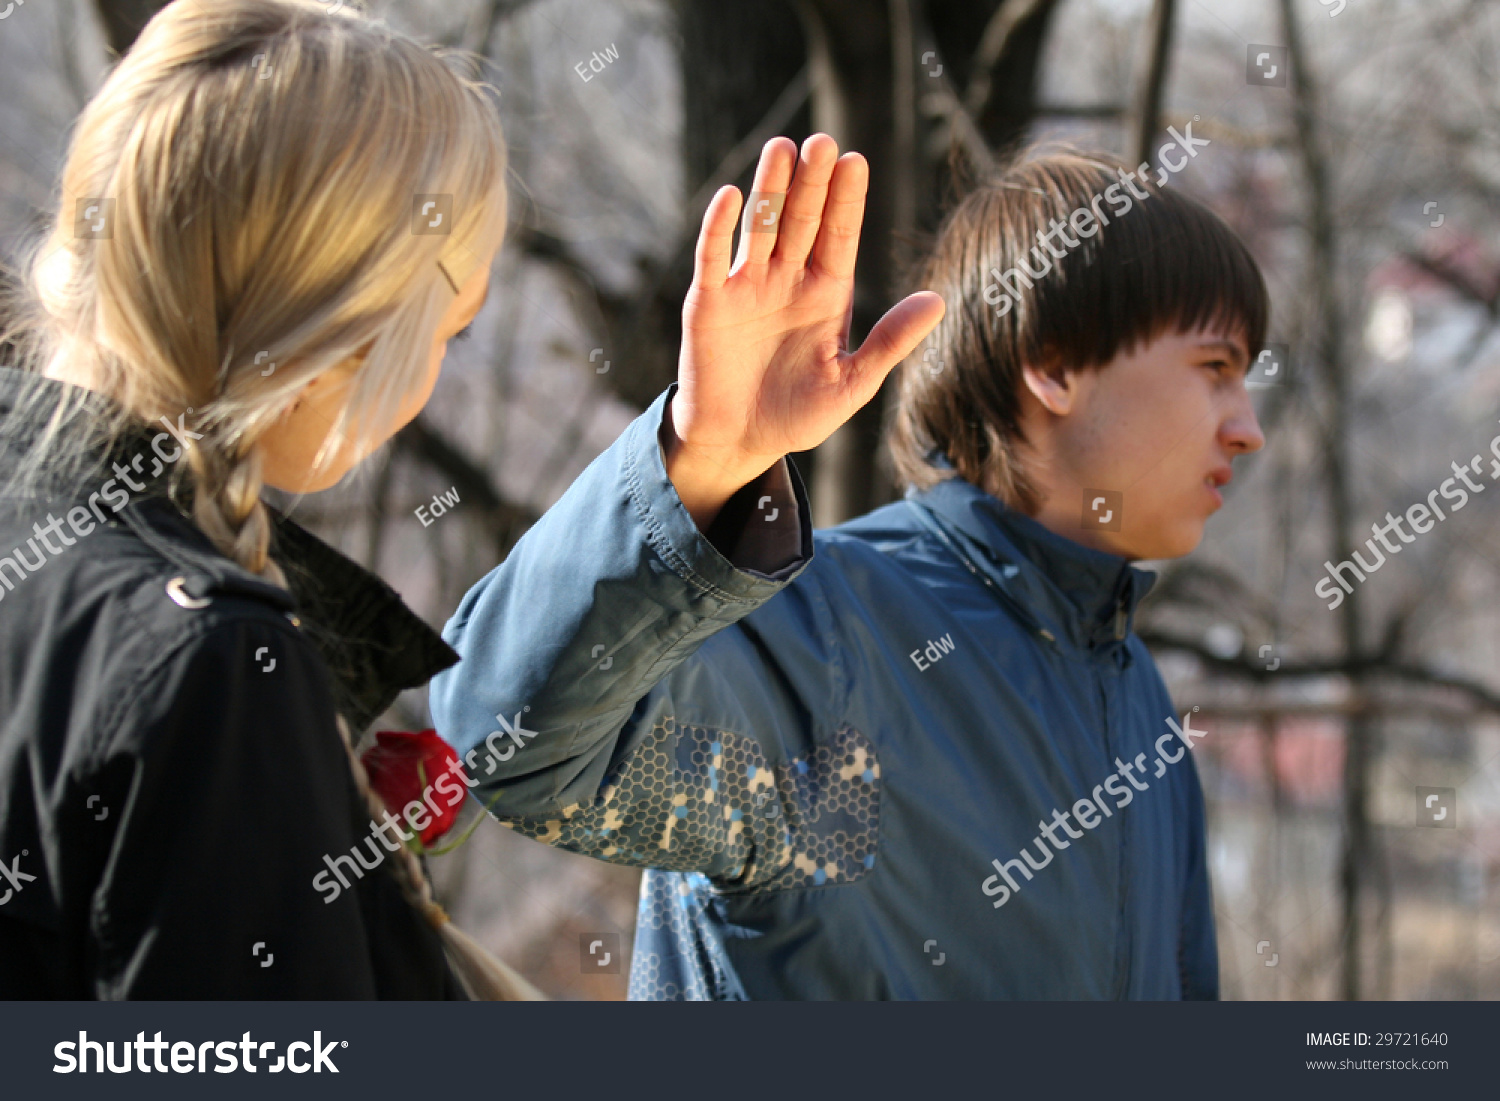 Conflict Scene Between Teenagers Stock Photo 29721640 : Shutterstock